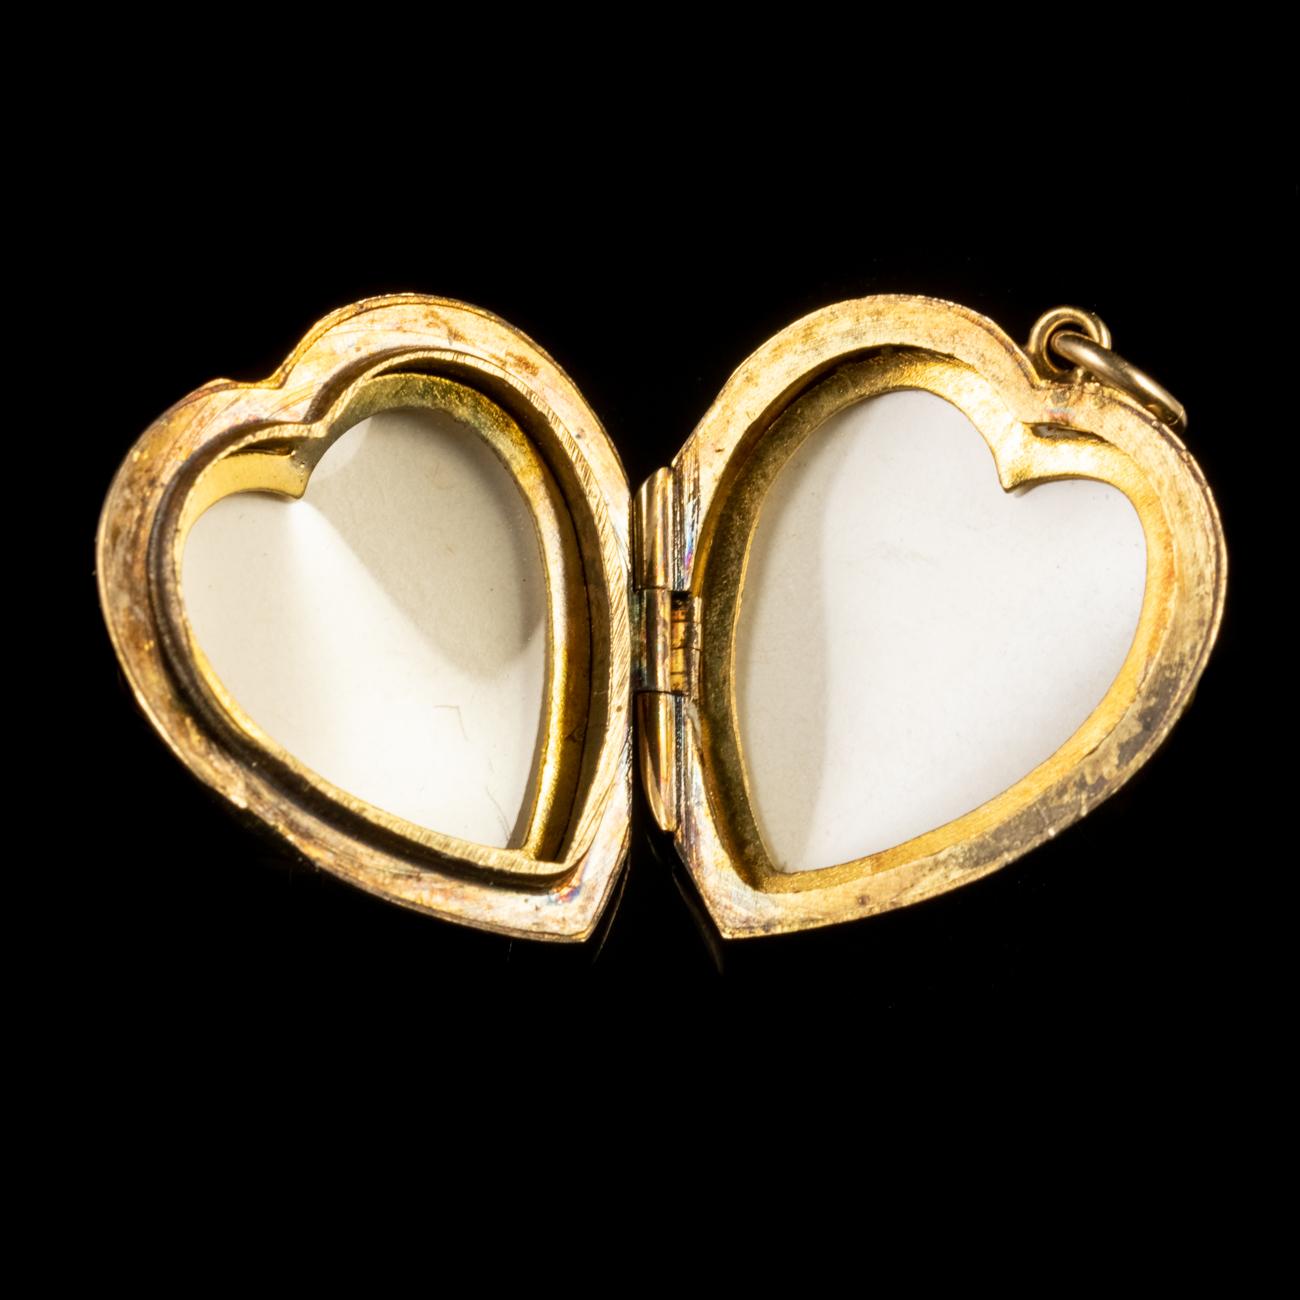 Vintage Heart Shaped Locket 9 Carat Gold For Sale 1